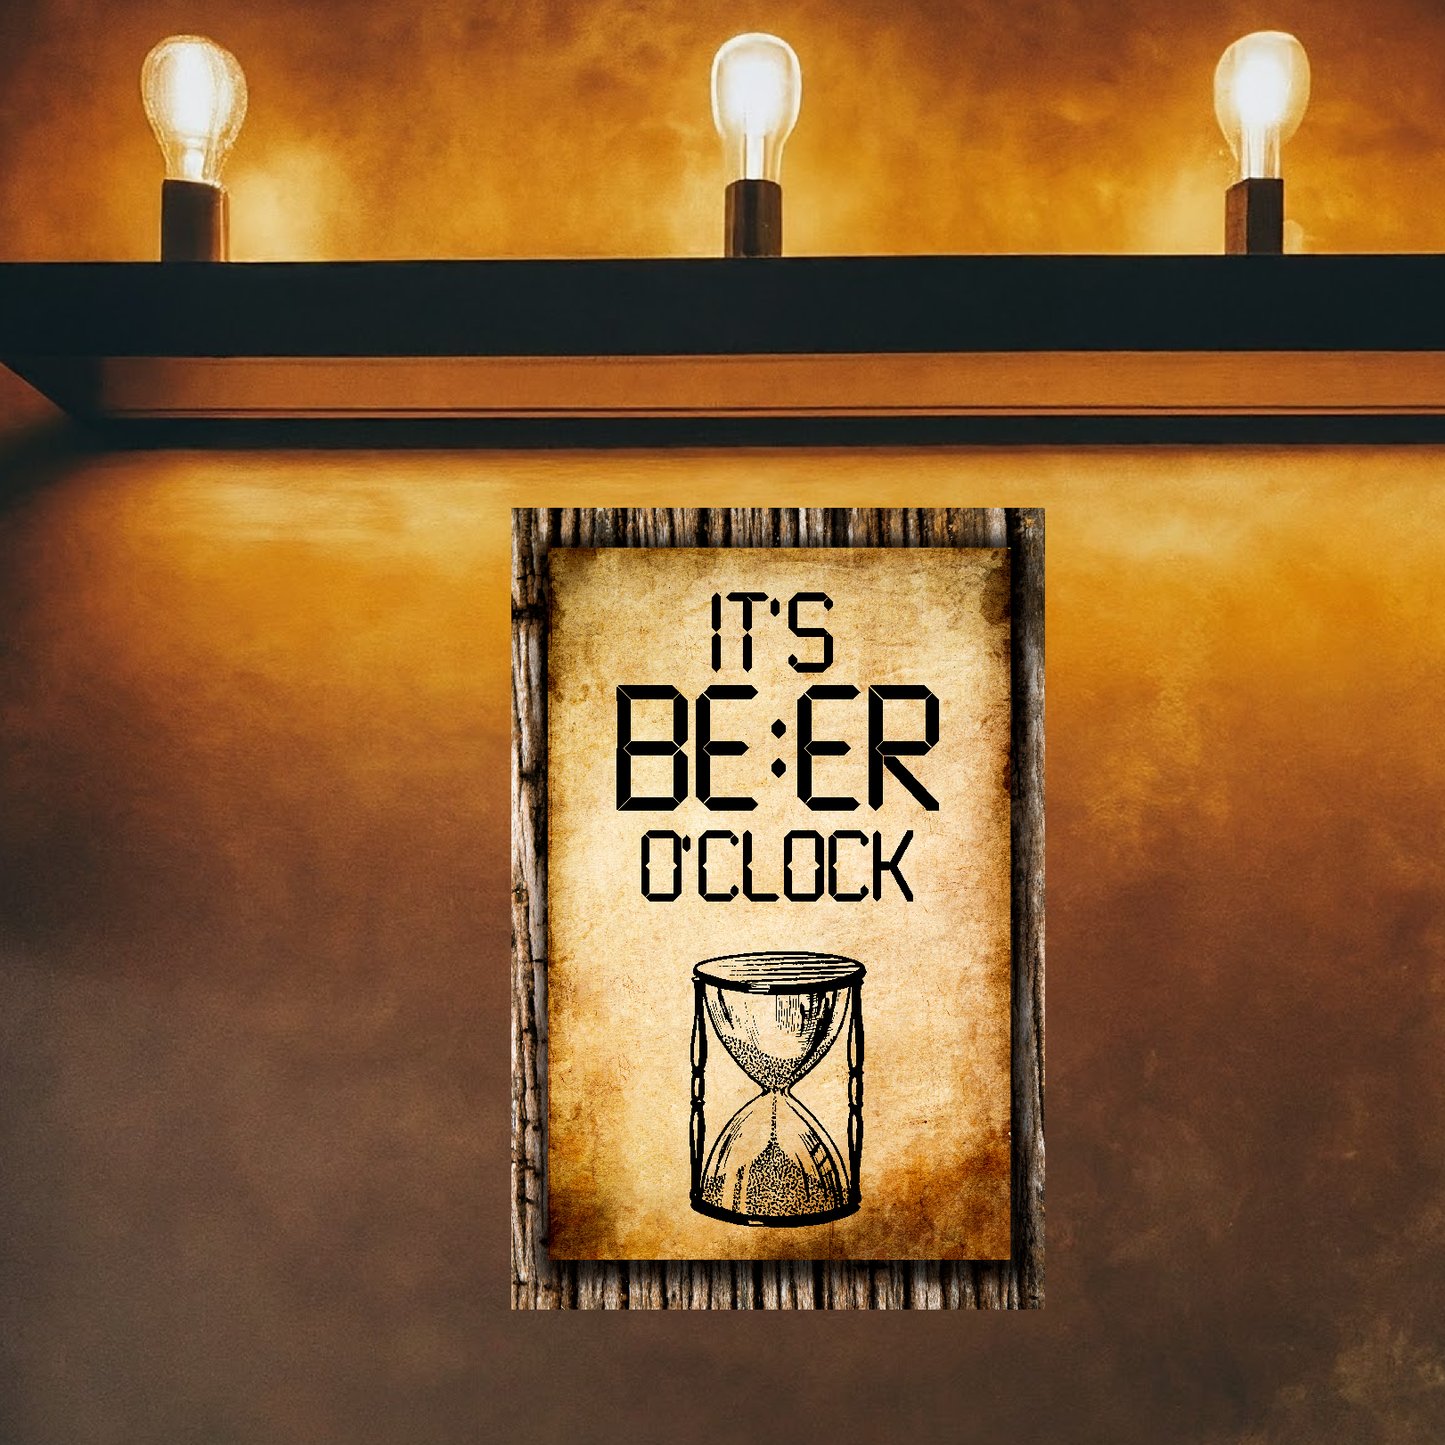 It's BEER O'clock (HourGlass) - 12" x 18" Vintage Metal Sign